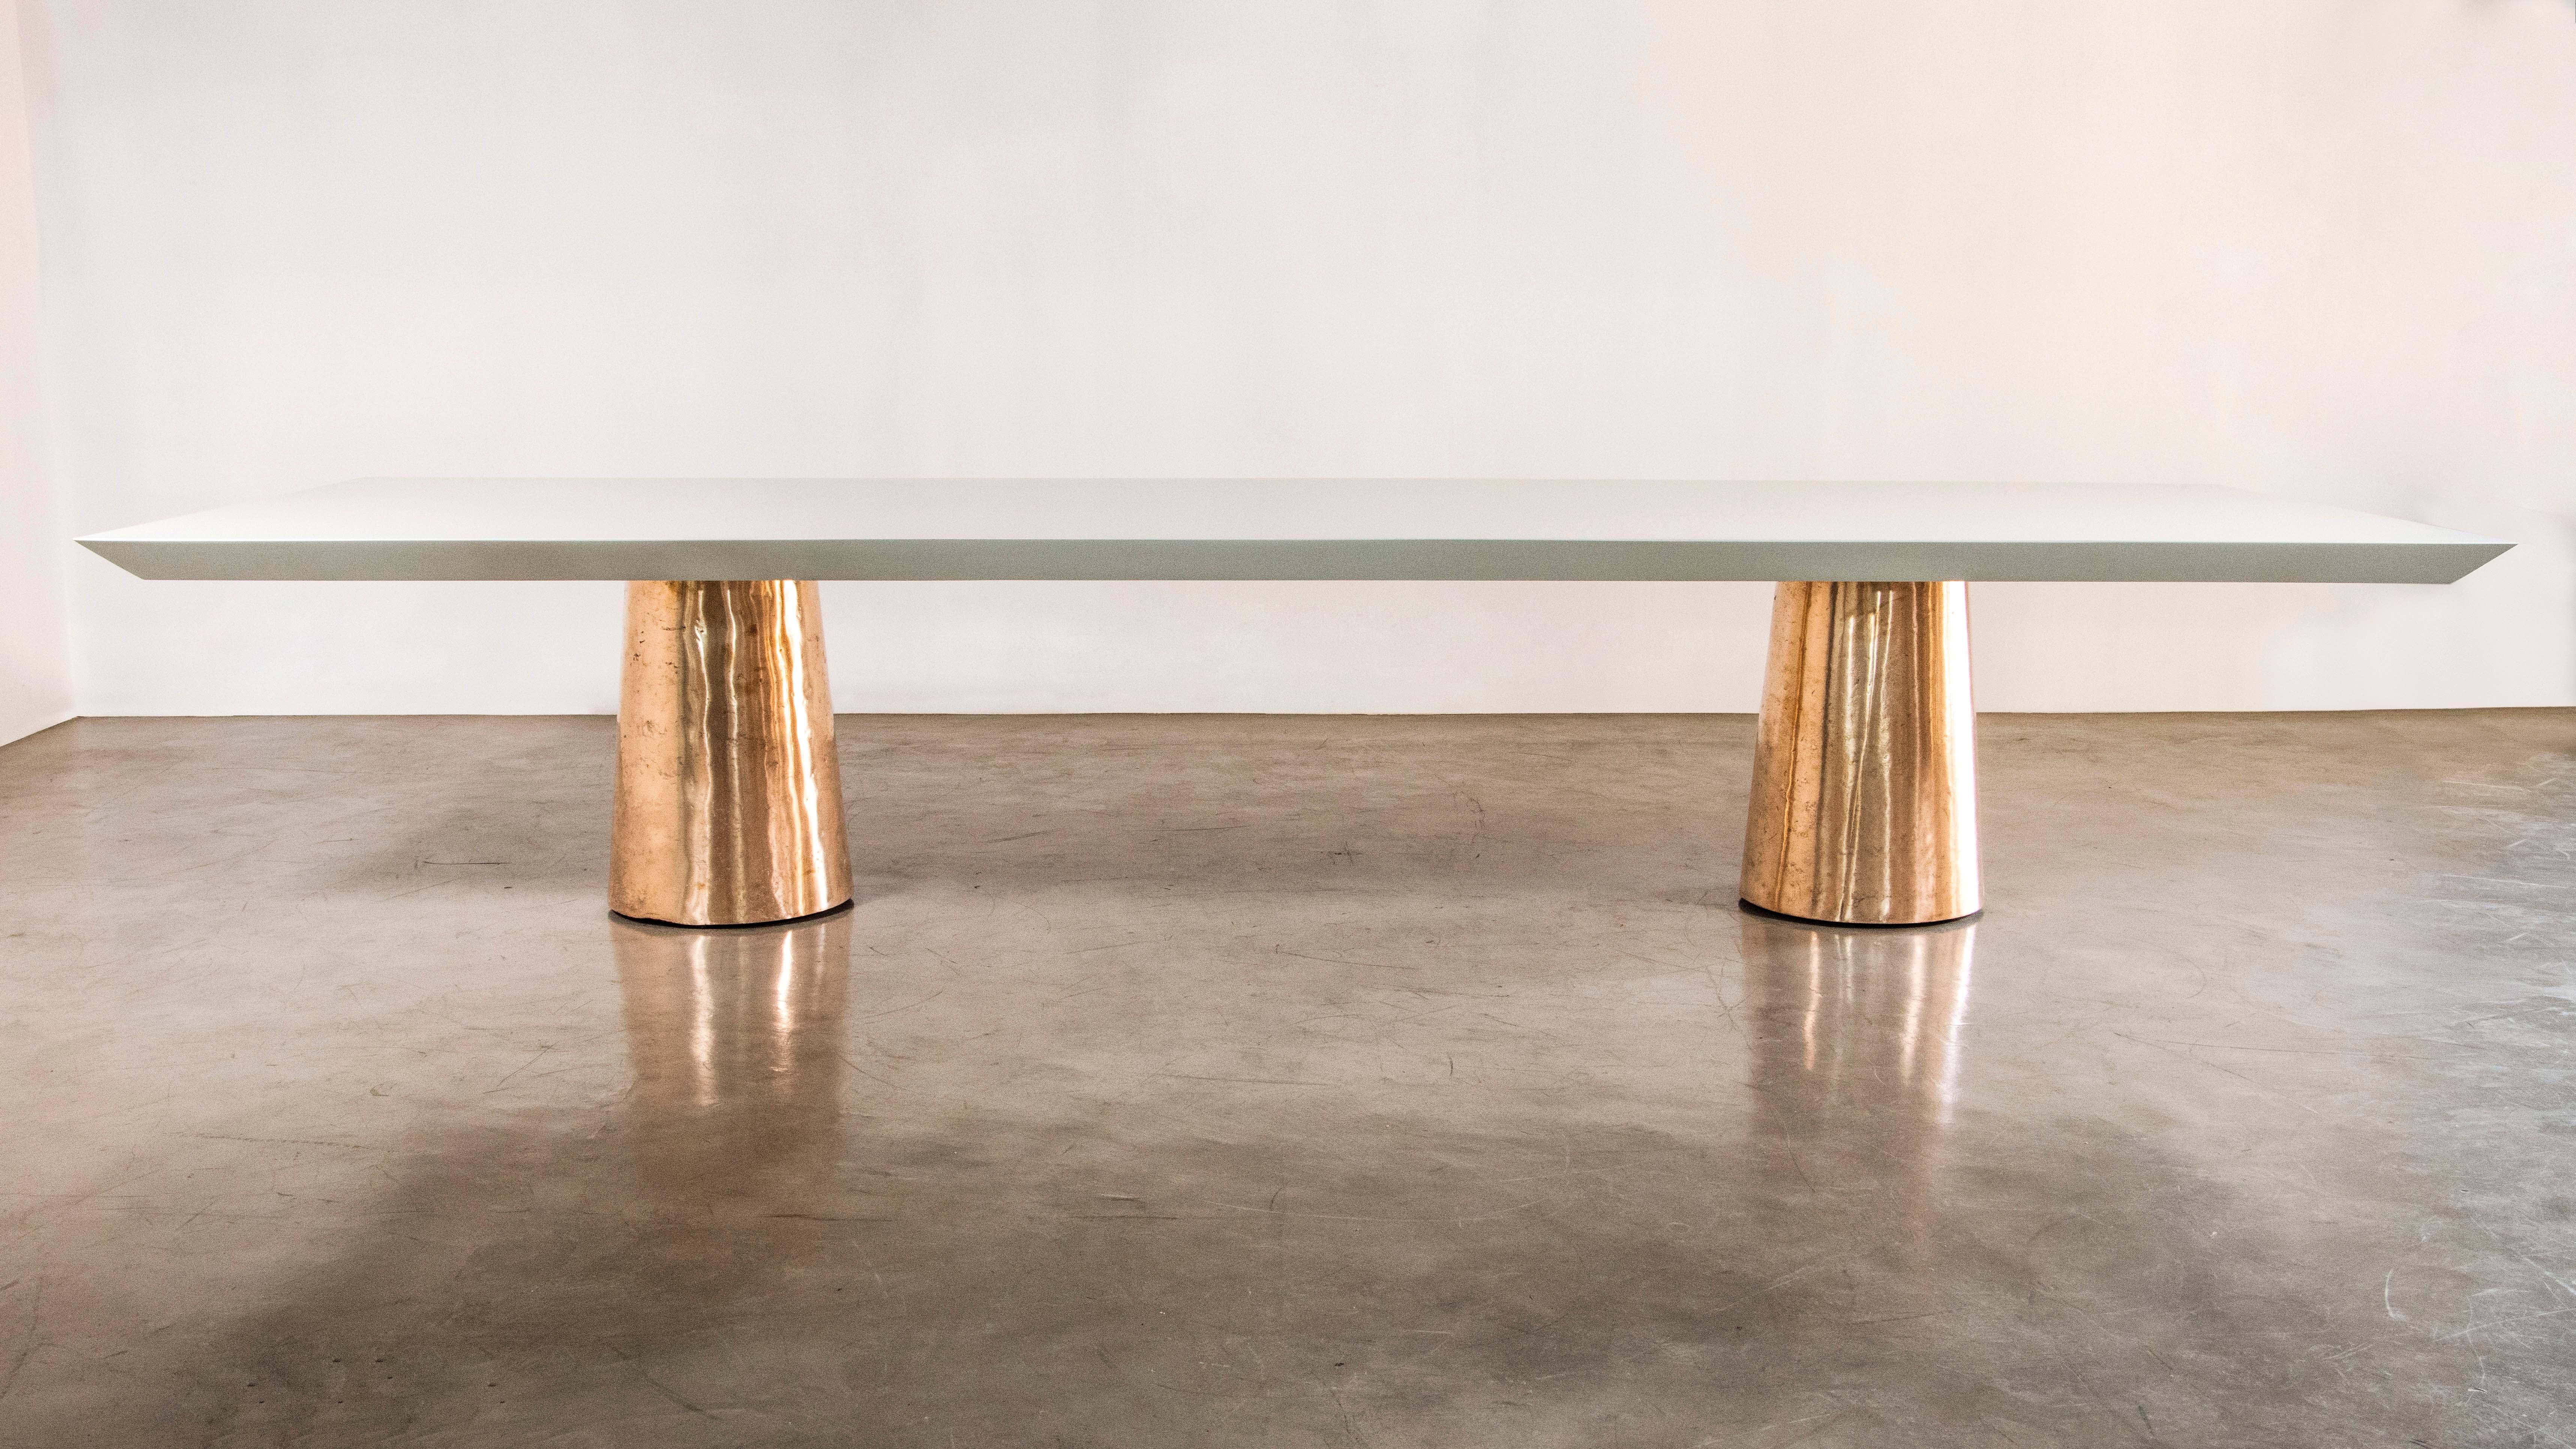 Der Tisch Benino besteht aus zwei polierten Bronzegussfüßen und einer lackierten Holzplatte mit Messerkante.  Erhältlich auch mit Stein- oder Naturholzplatte, in jeder Größe und Ausführung.  

Die Maße sind: 156